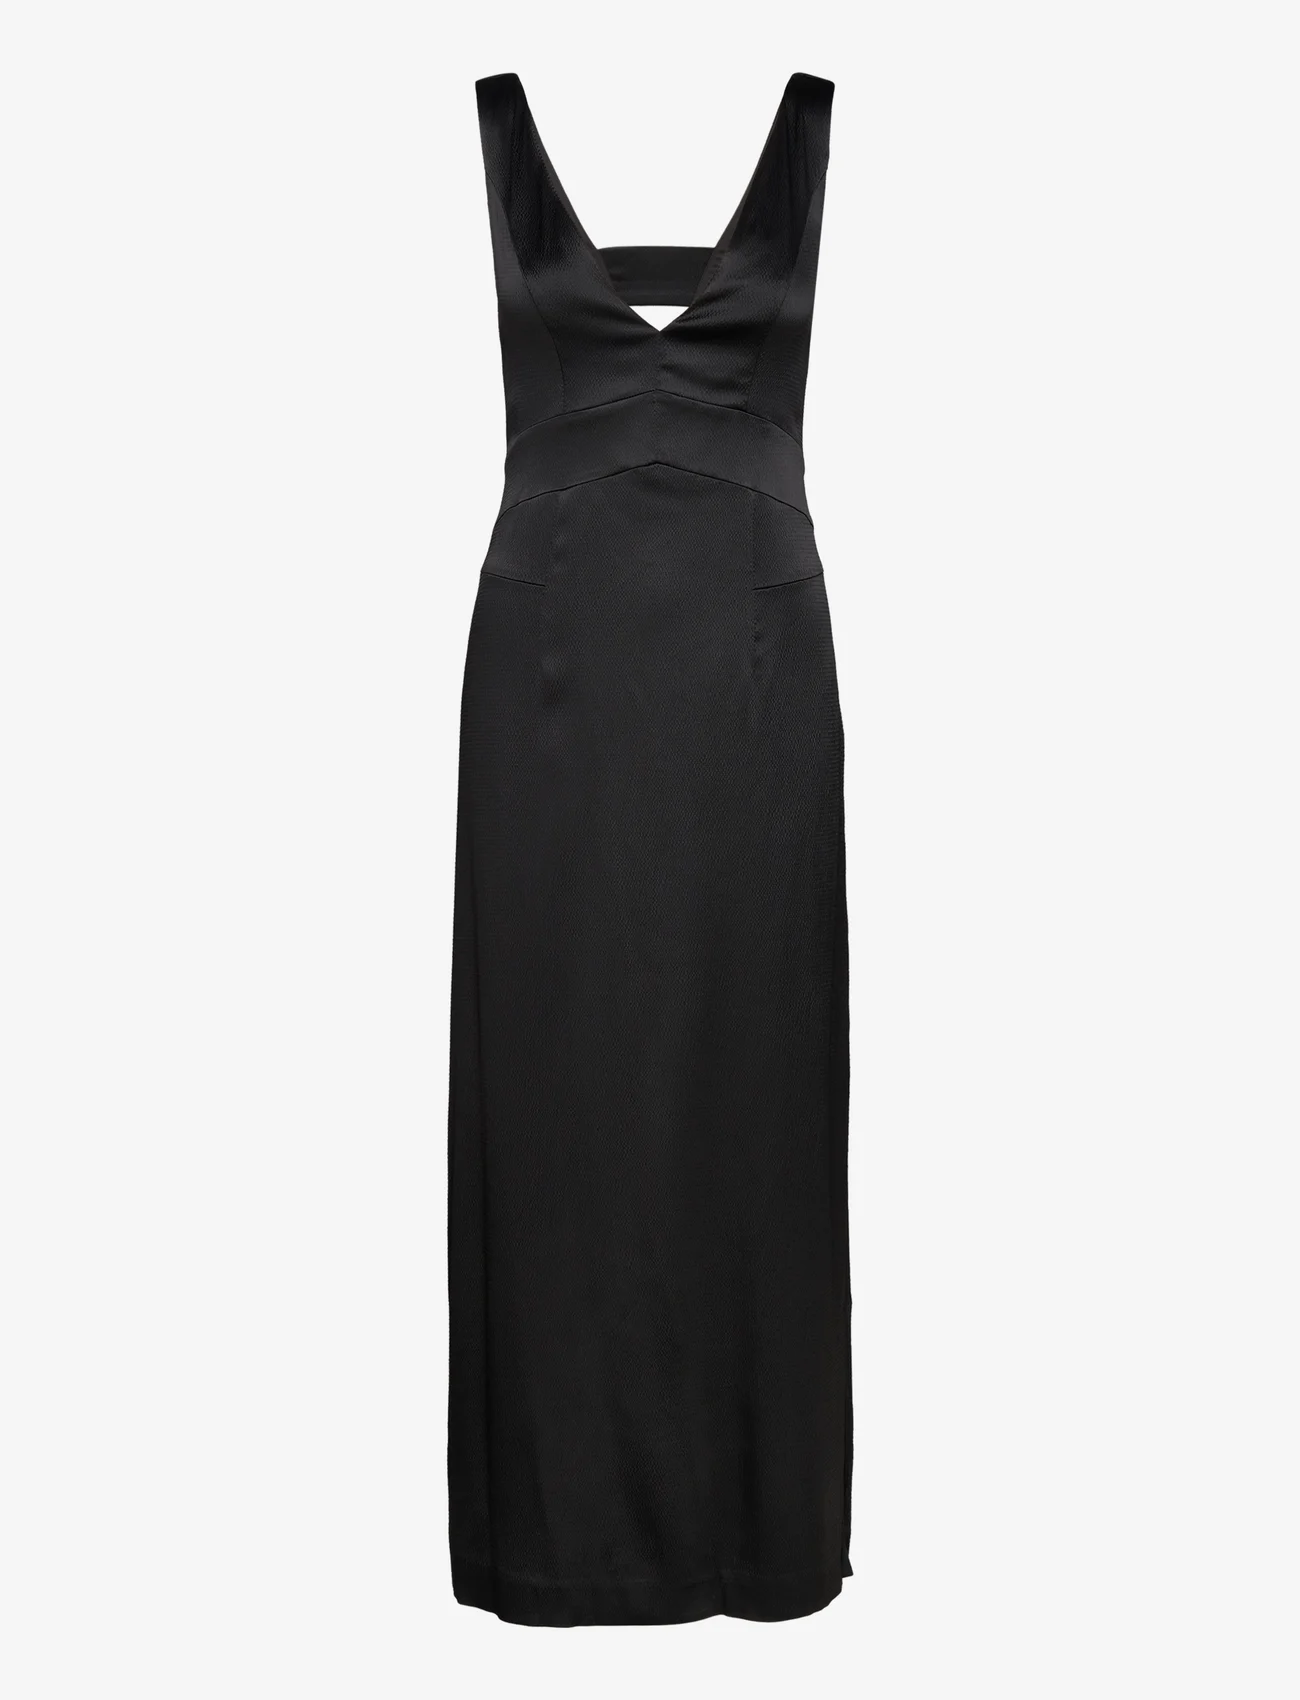 IVY OAK - Ankle Legth Strap Dress - festkläder till outletpriser - black - 0